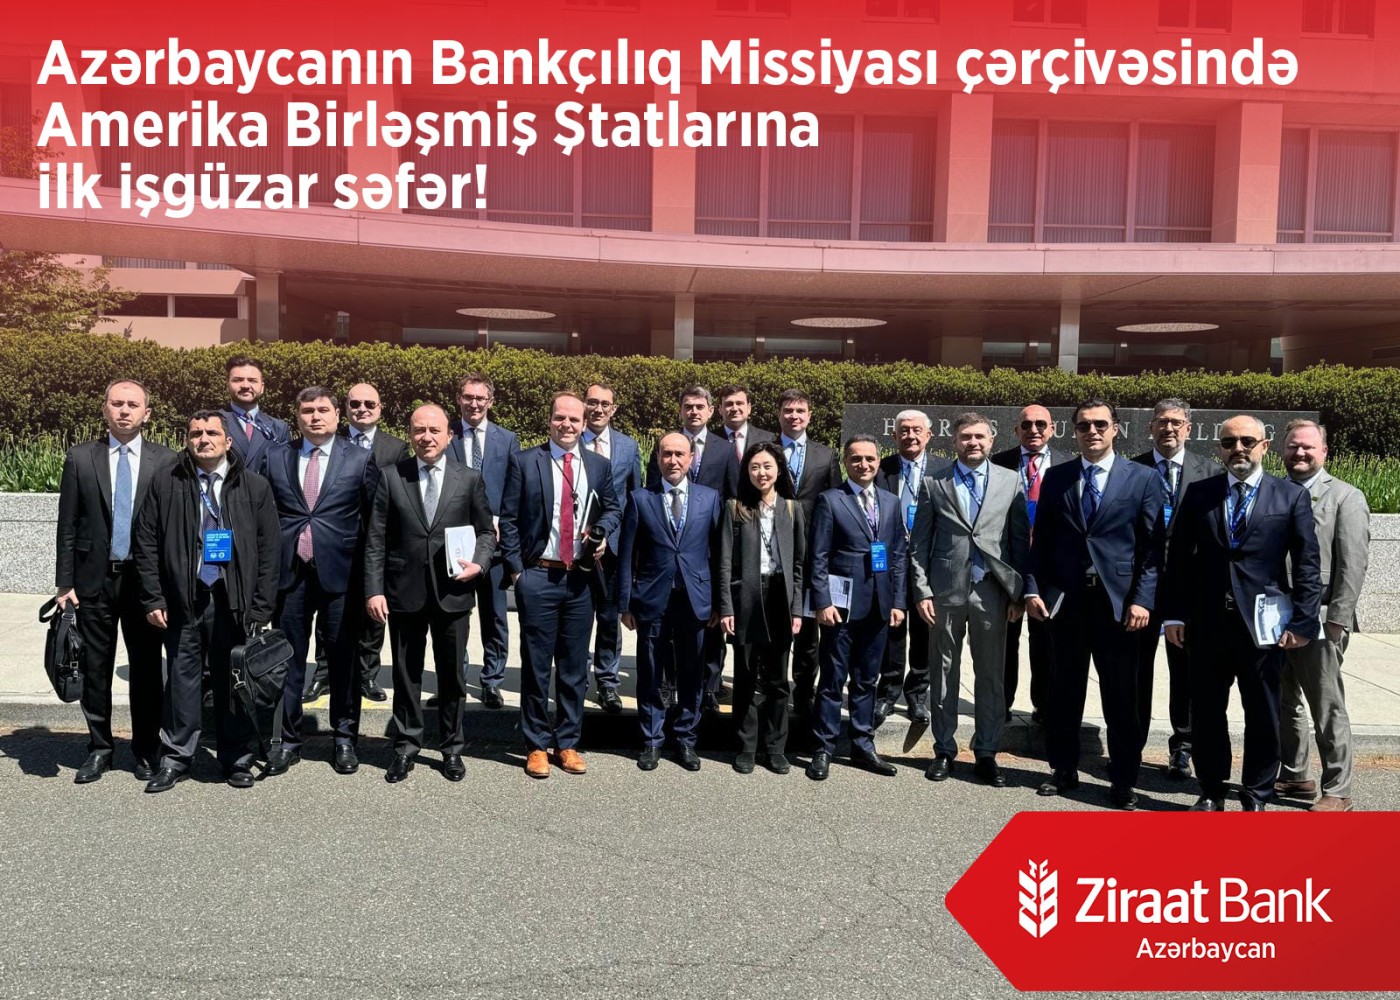 "Ziraat Bank Azərbaycan" ölkəmizin bankçılıq missiyasının ABŞ-yə ilk geniş işgüzar səfərində iştirak edib - FOTO